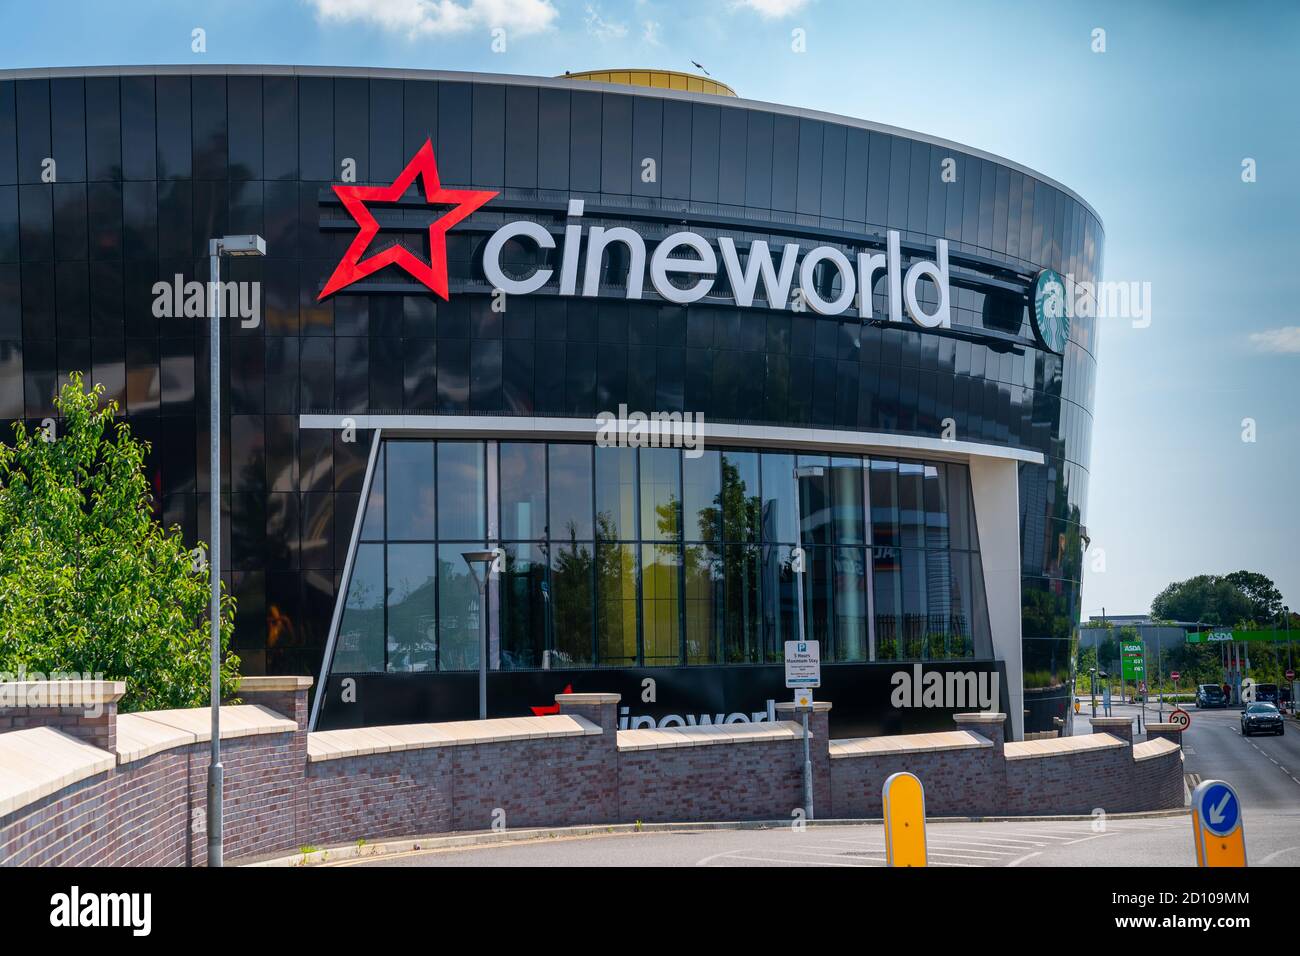 LONDRA, INGHILTERRA - 26 GIUGNO 2020: Cinema Cineworld a South Ruislip, Londra, Inghilterra chiuso durante la pandemia COVID-19 - 047 Foto Stock